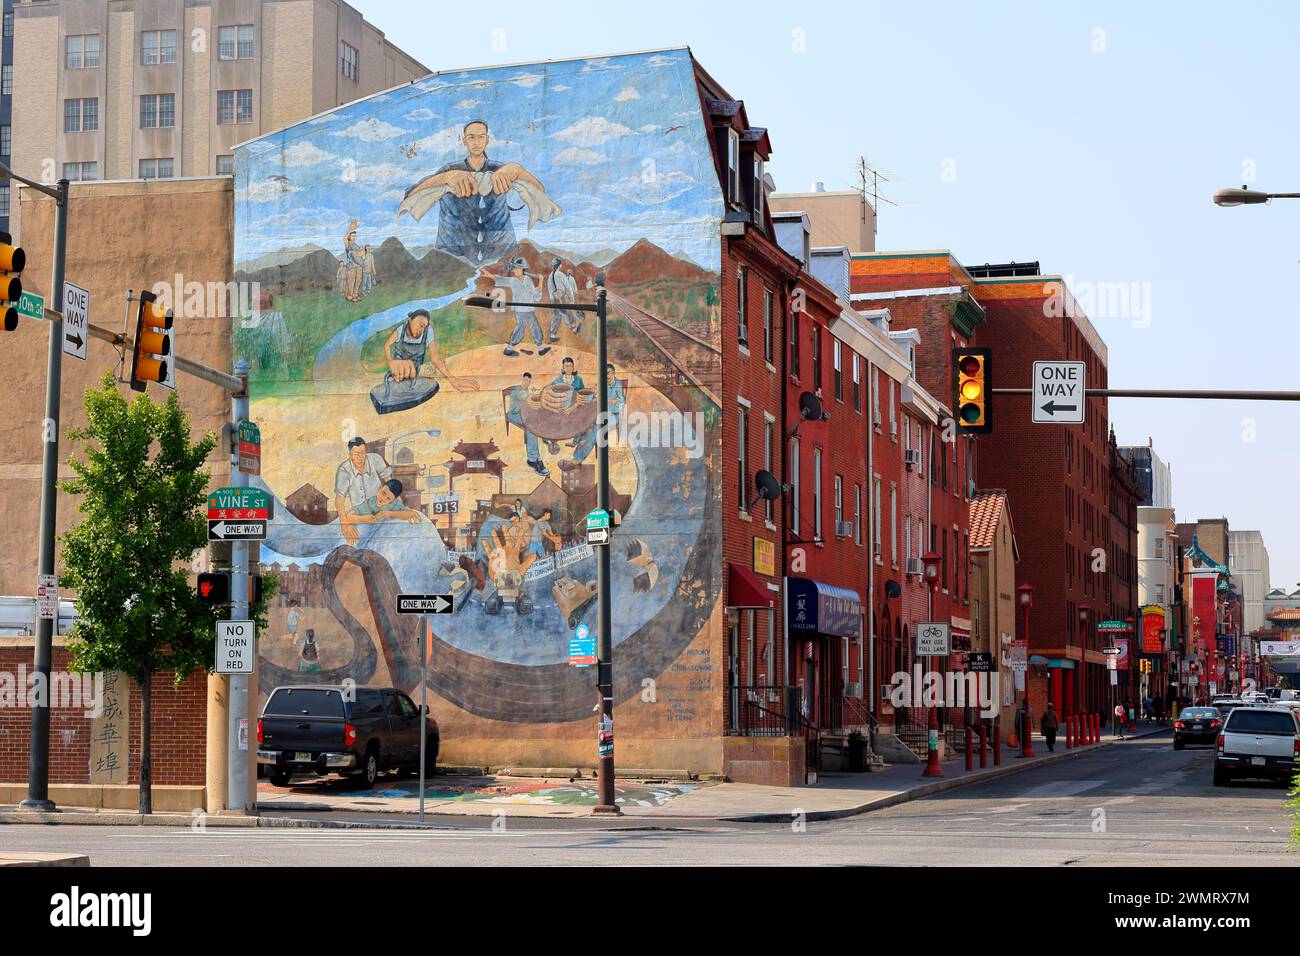 Histoire de Chinatown, Philadelphie, 費城華埠. Une murale d'art public représentant l'histoire sino-américaine avec des travailleurs des chemins de fer immigrés et des blanchisseries Banque D'Images